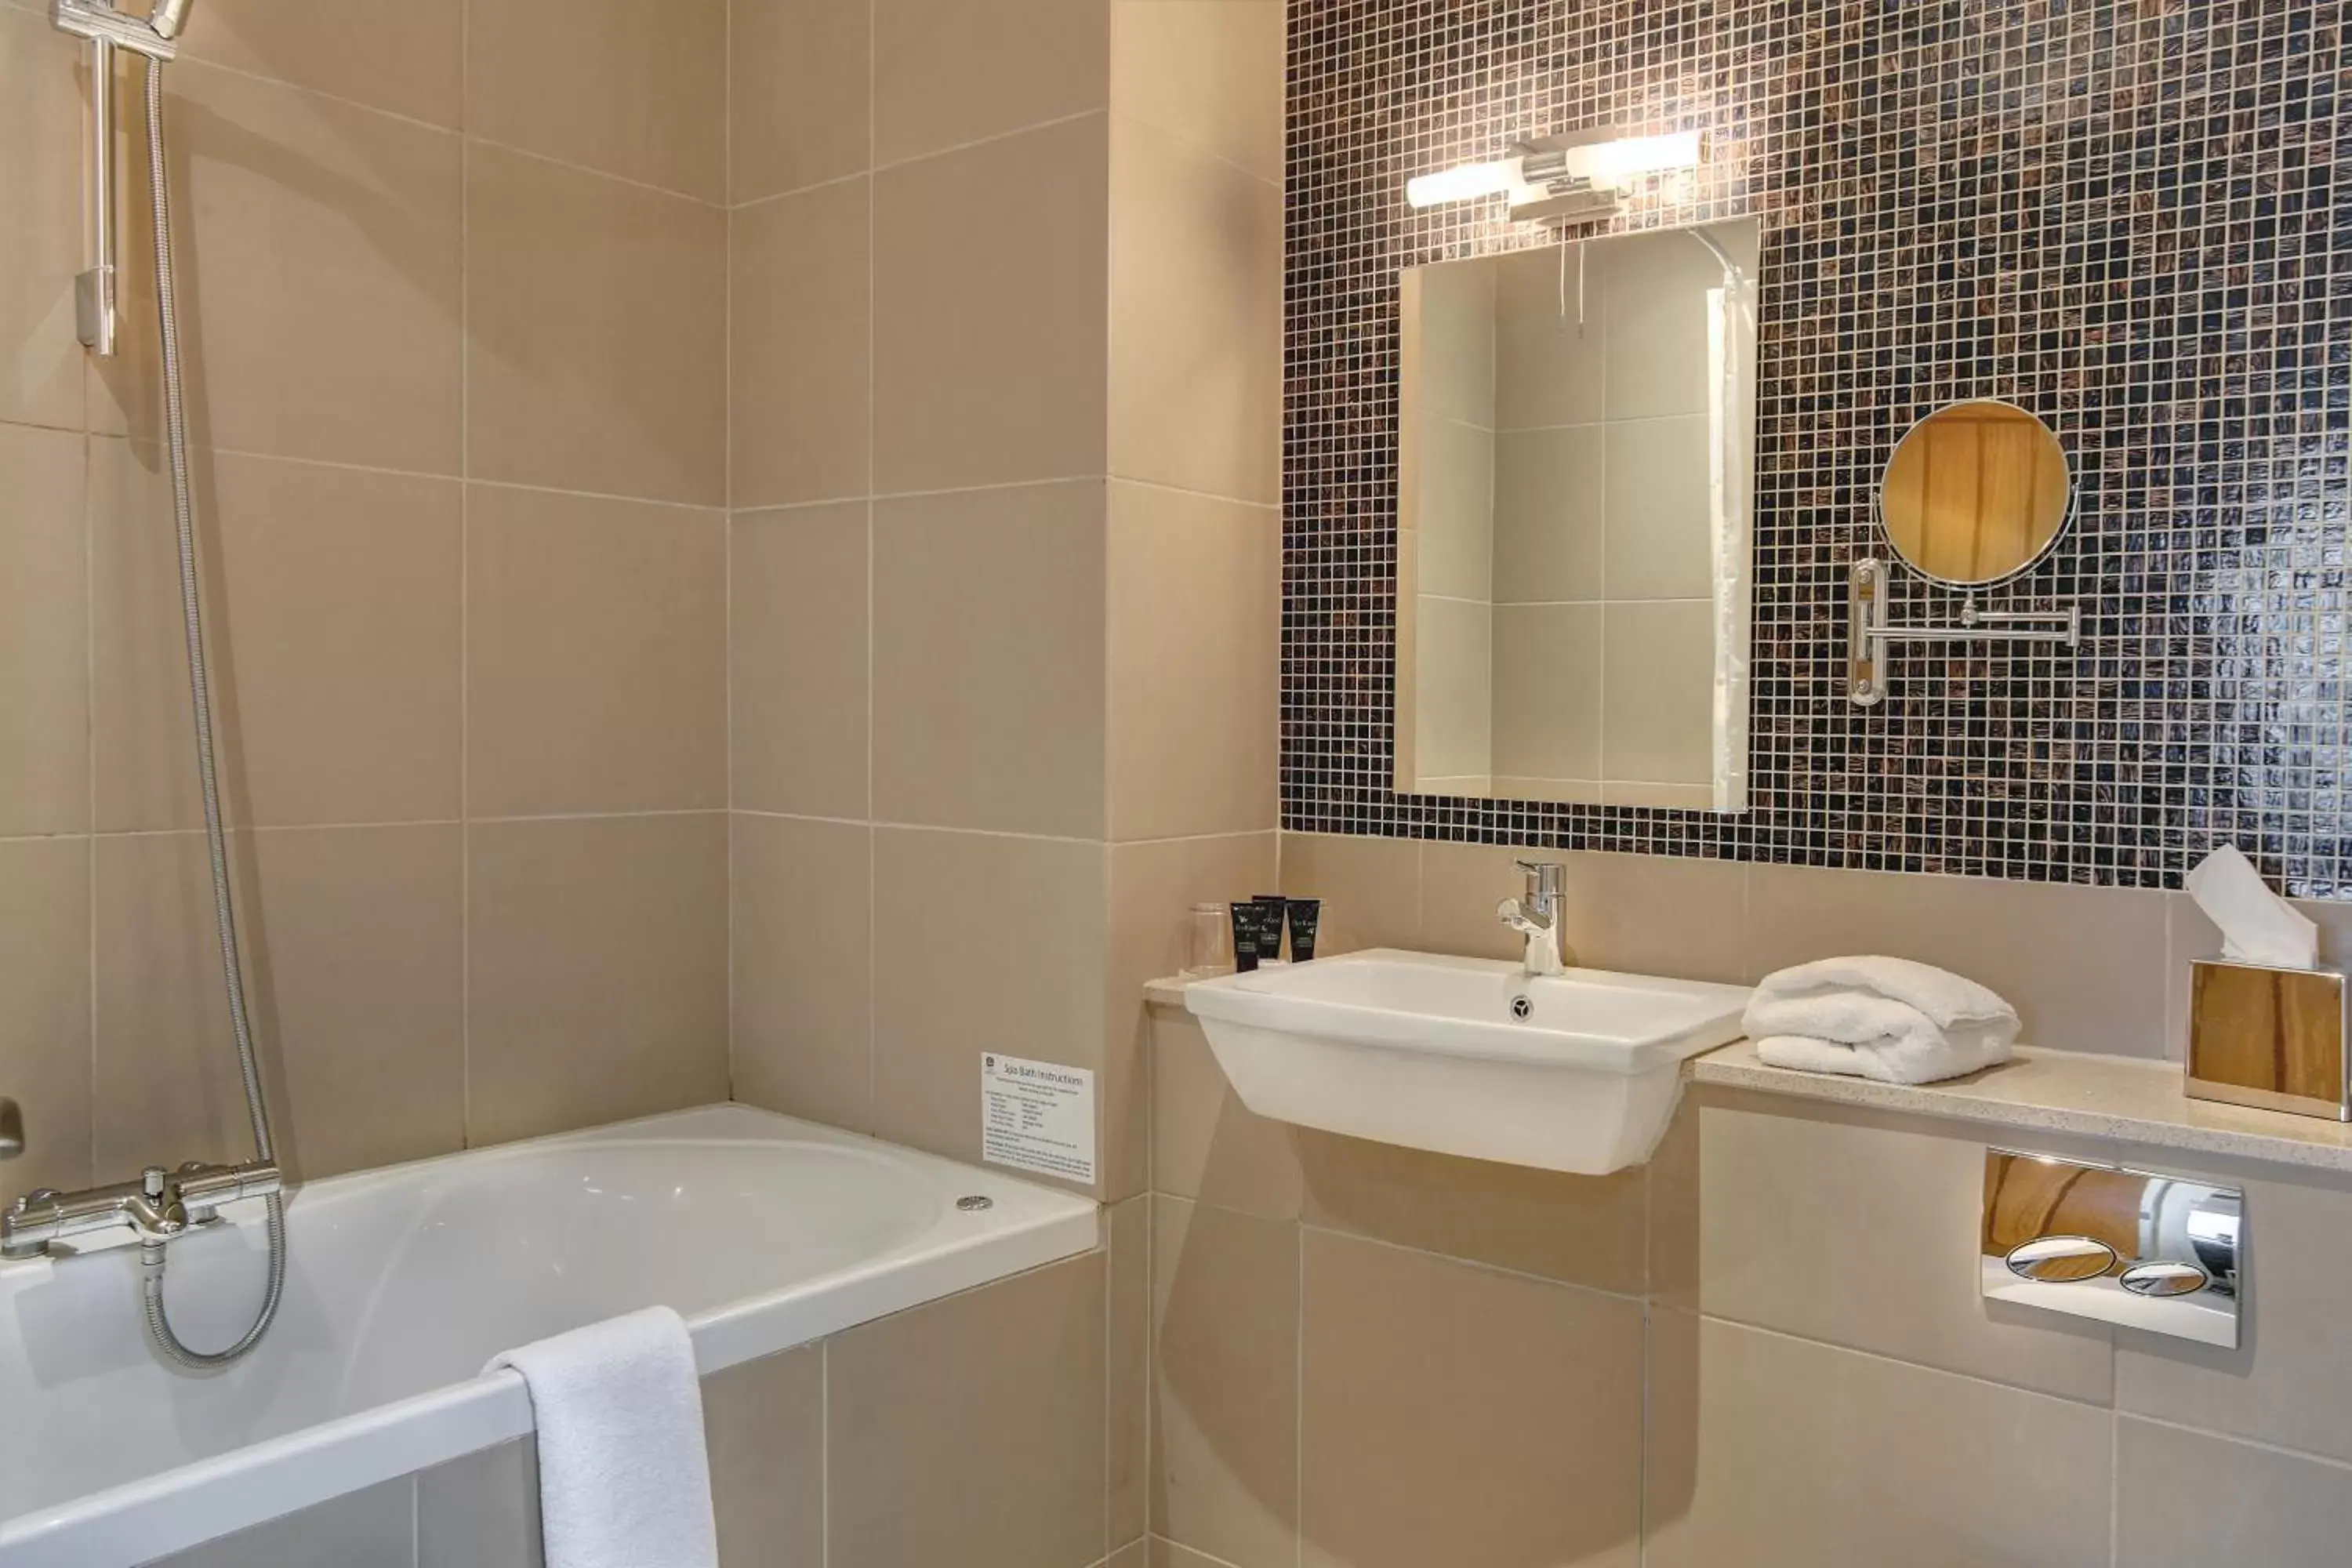 Bedroom, Bathroom in Quy Mill Hotel & Spa, Cambridge